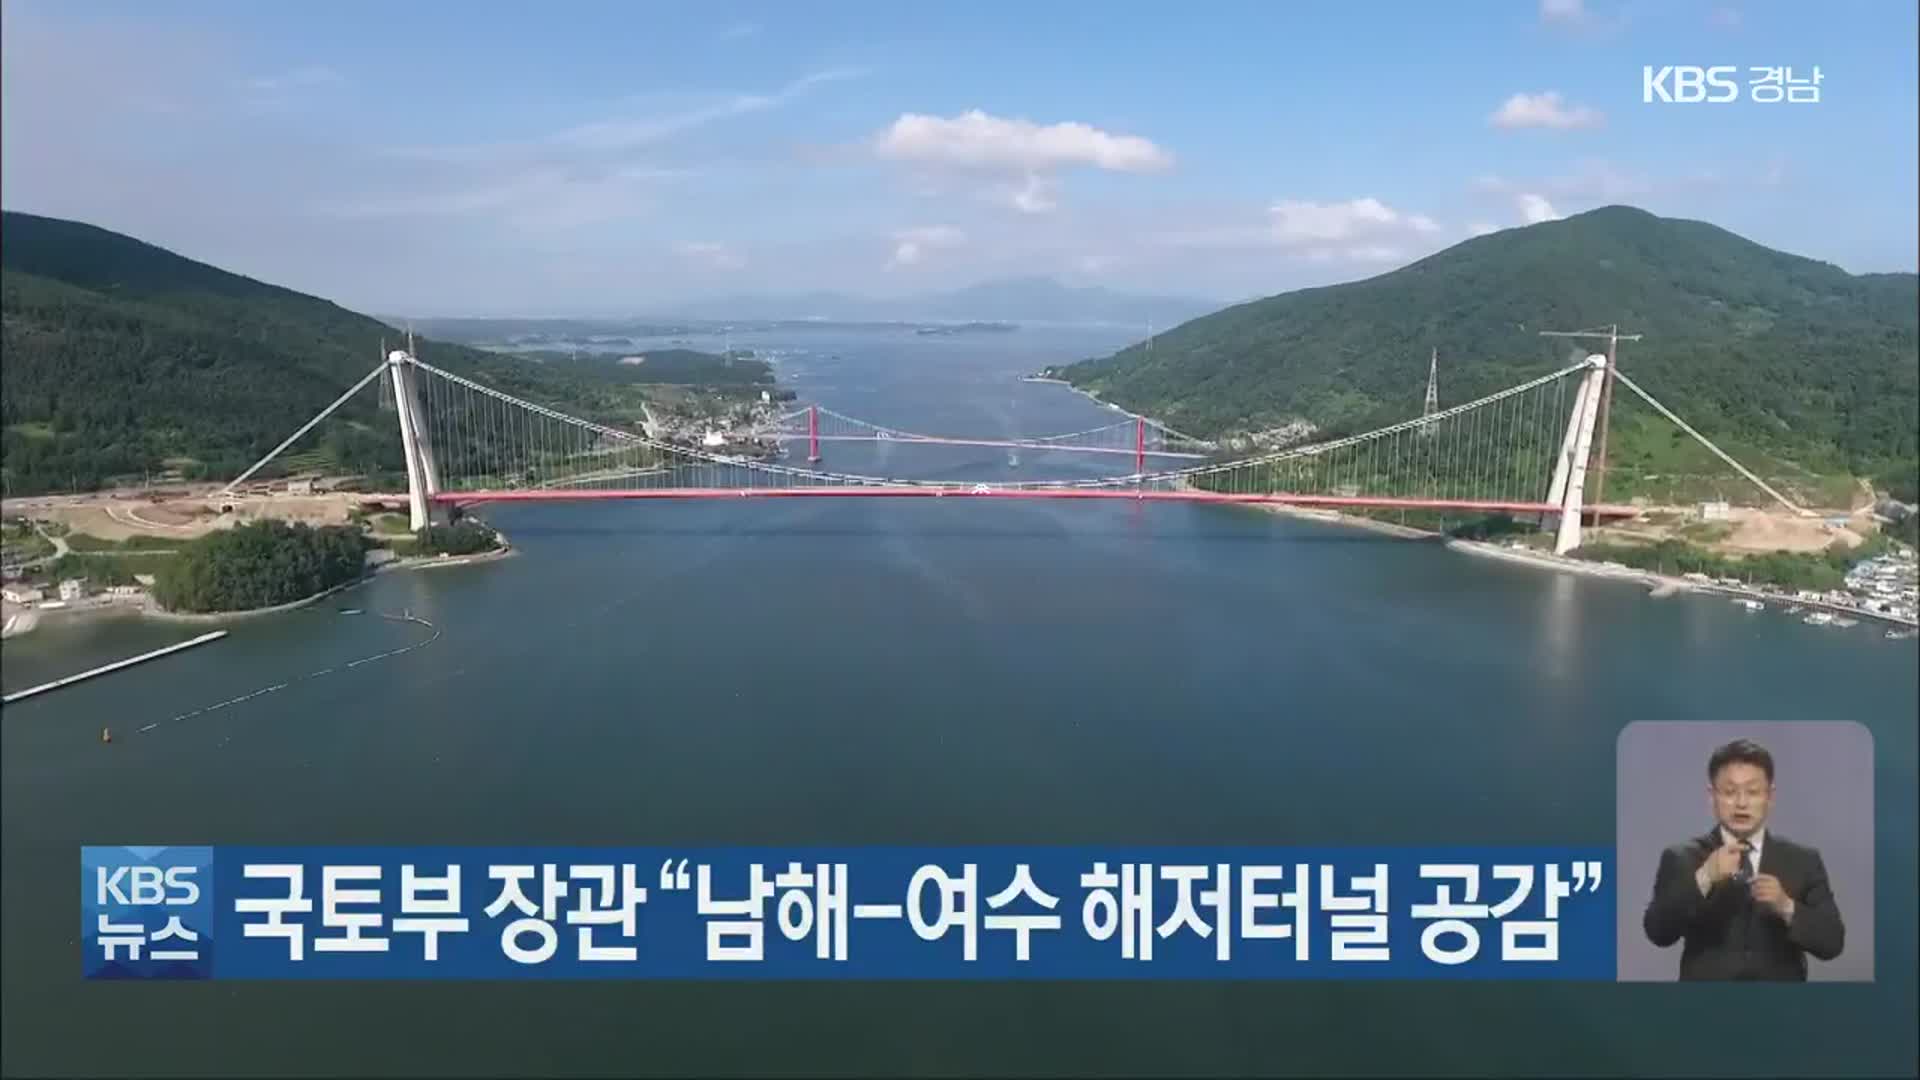 국토부 장관 “남해-여수 해저터널 공감”